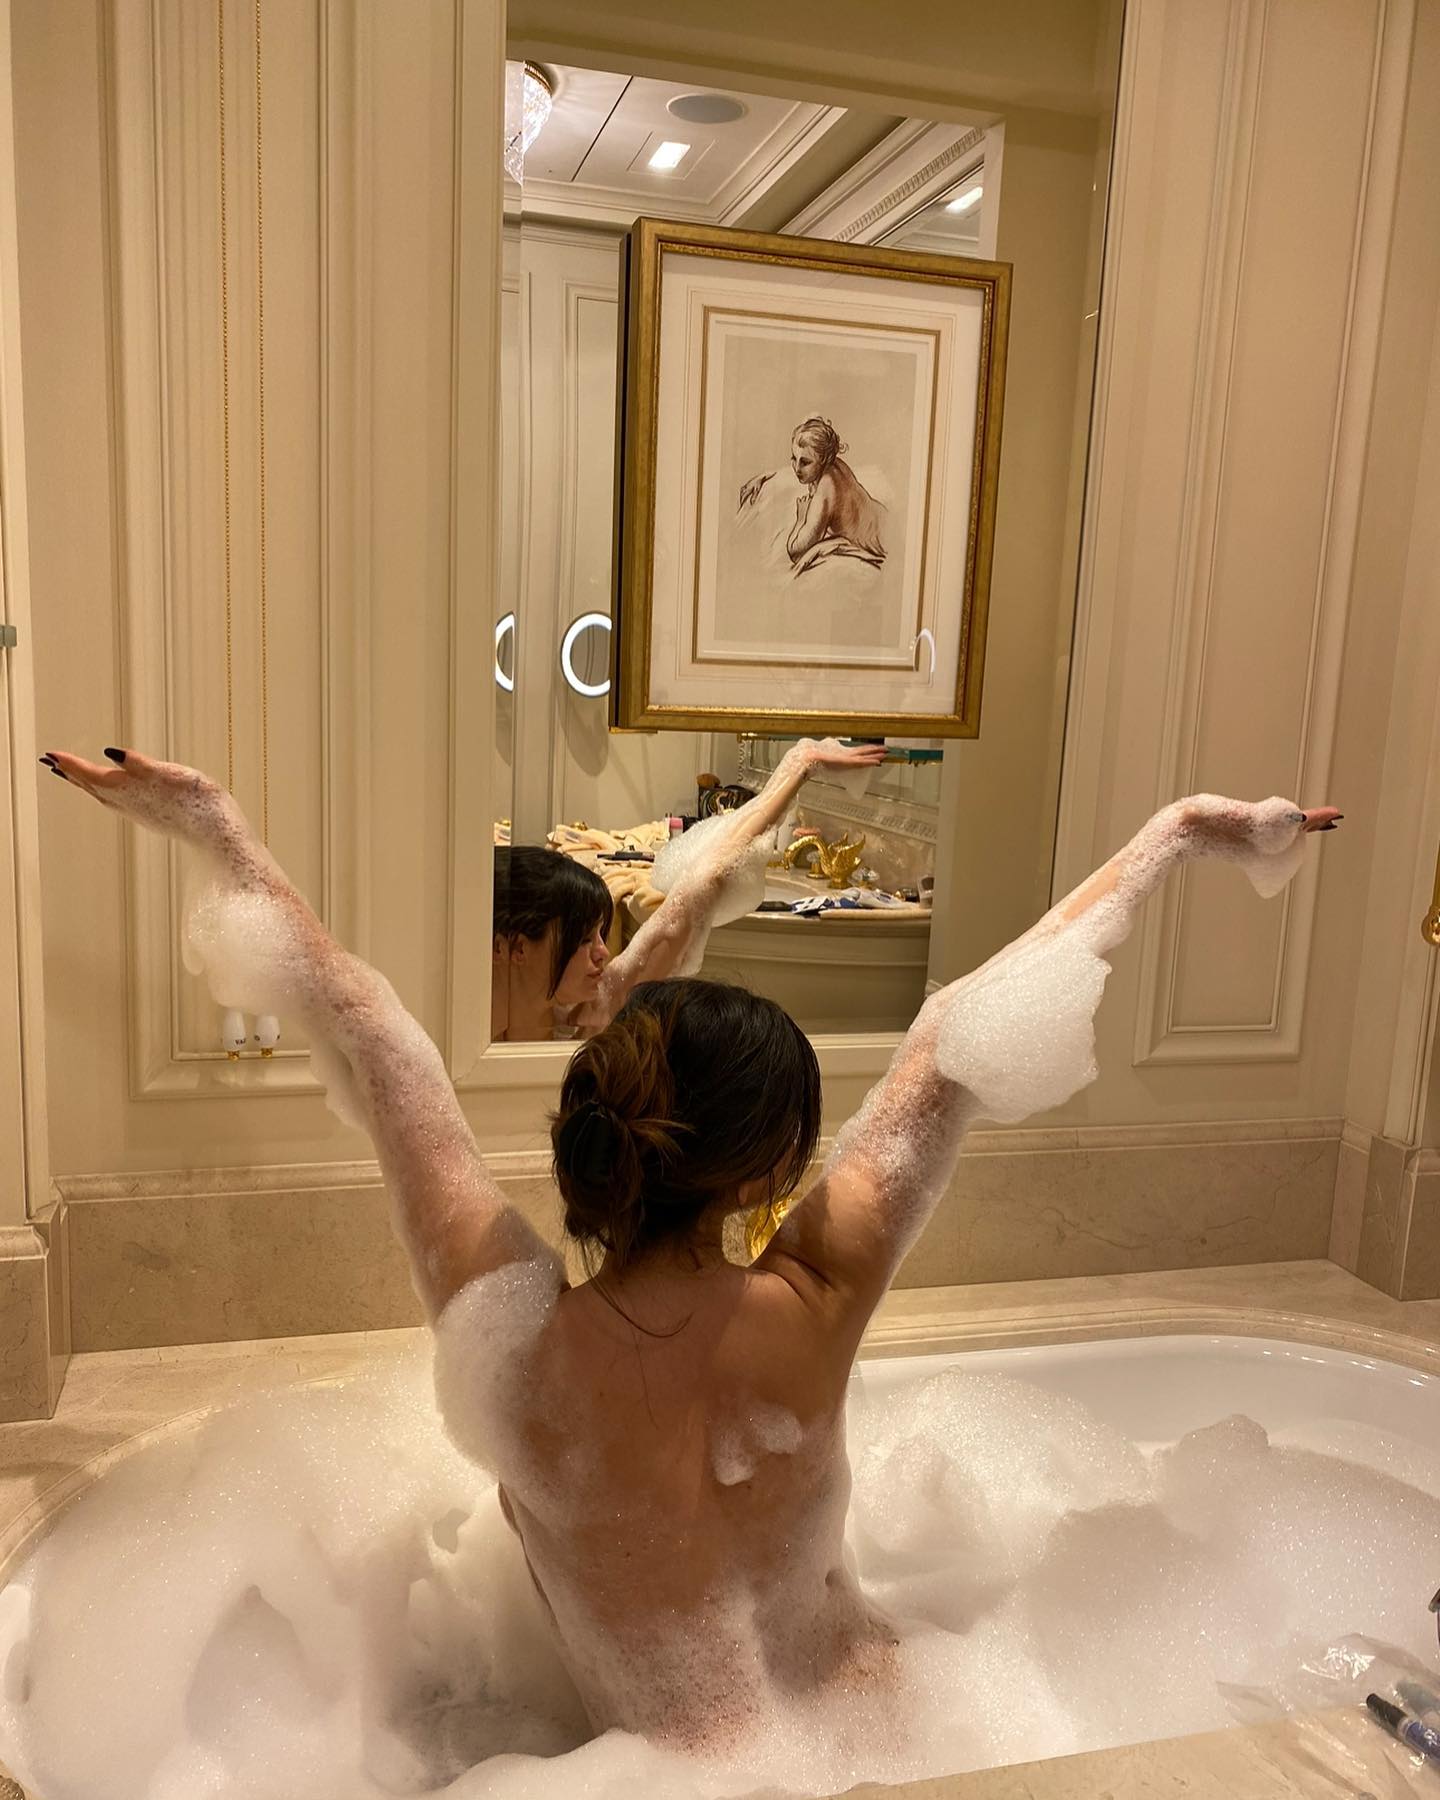 Селена Гомес отлично развлеклась в Париже. Топ фото честных селфи Селены Гомес с круассаном в кафе, чипсами в постели и с пеной в ванной